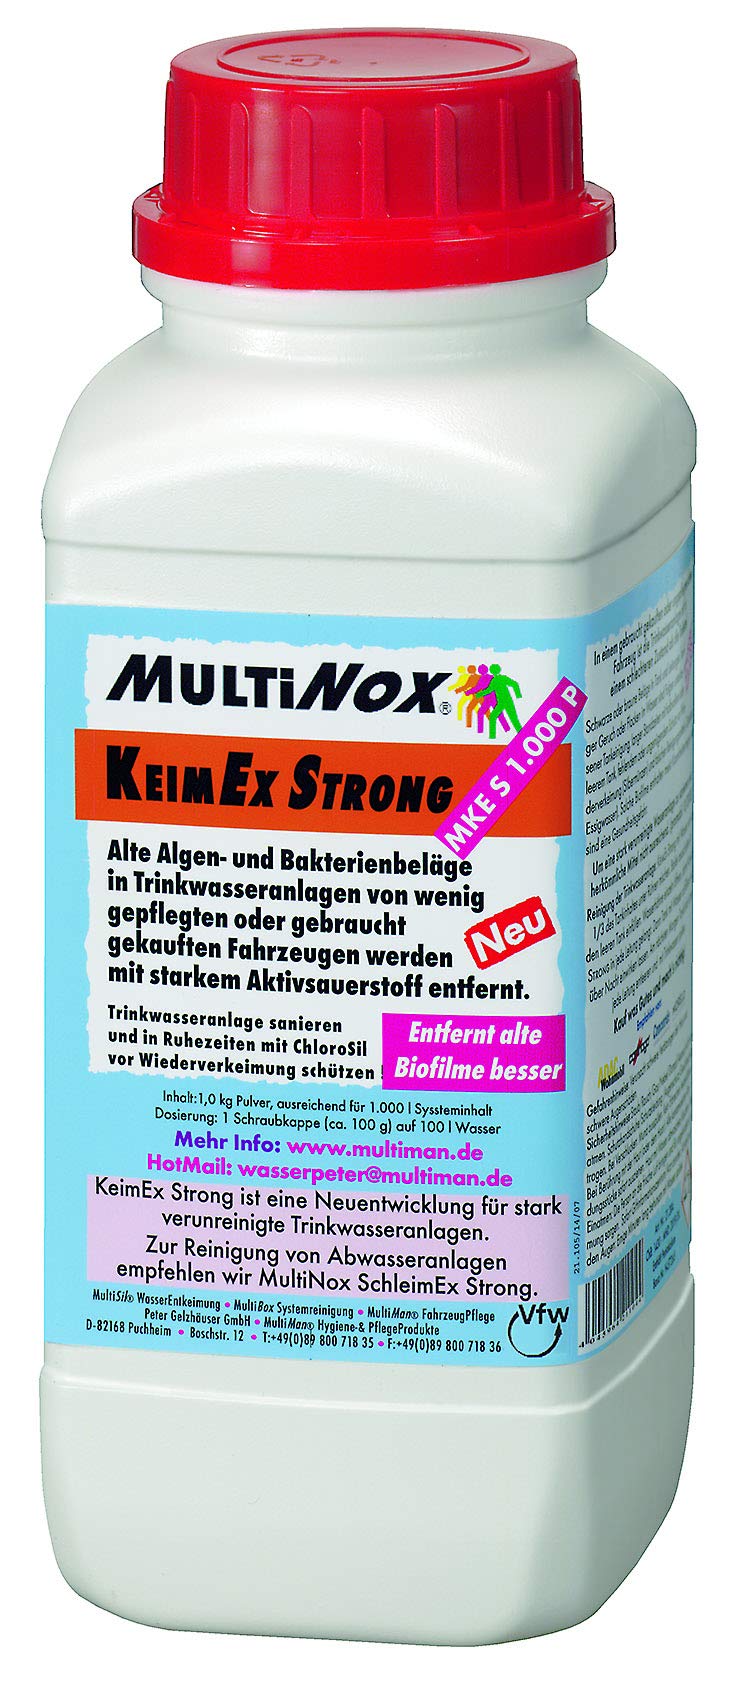 MultiNox® KeimEx Strong Pulver für Tanks ab 100-1000 l - Inhalt: 1000 g - Entfernt frische Biofilme in Trinkwasseranlagen von Caravan & Boot von Multiman